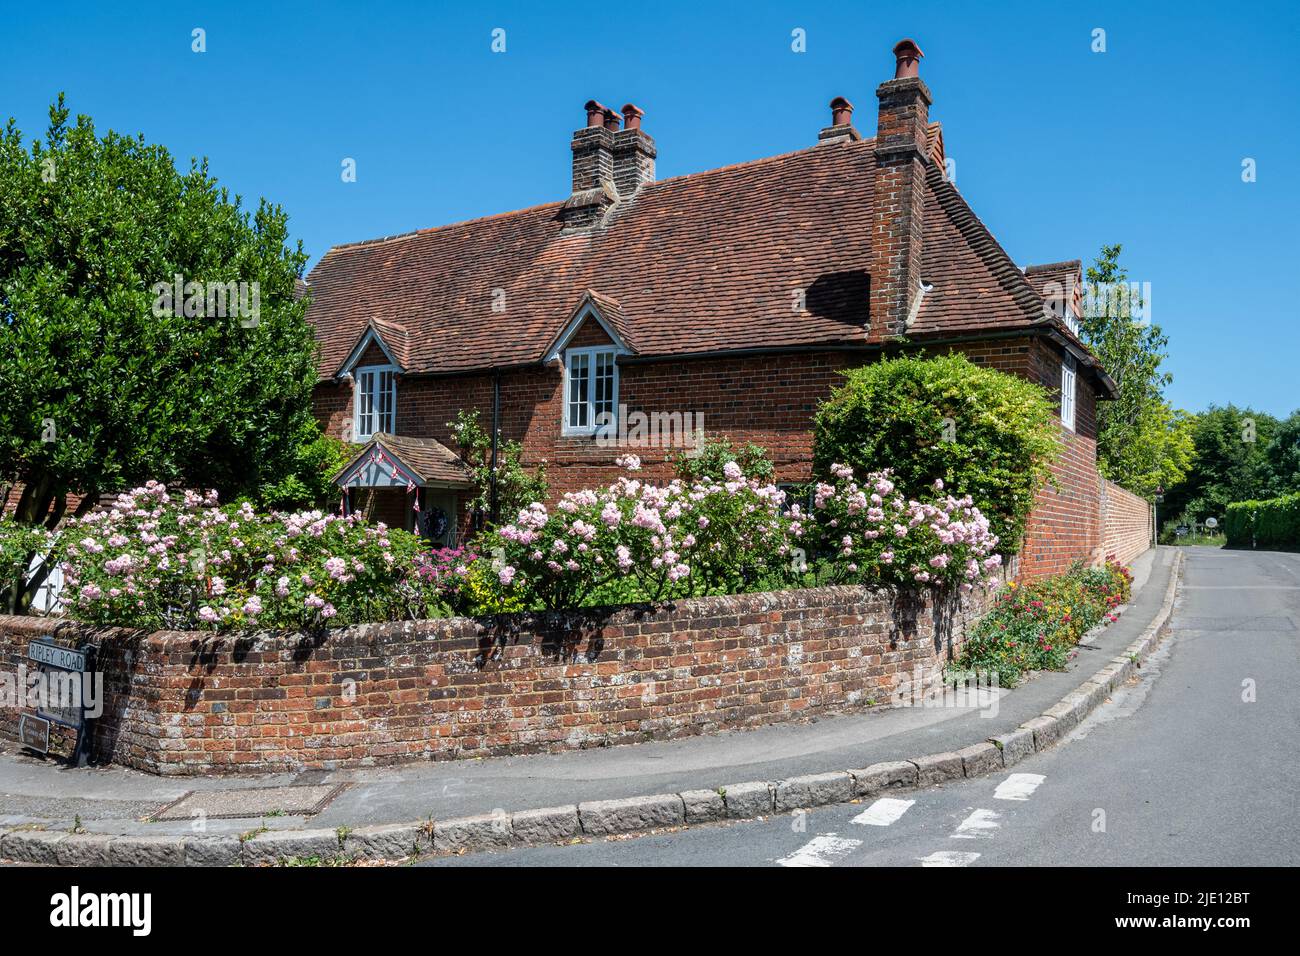 Joli cottage avec roses dans le jardin à l'avant, village de East Clandon, Surrey, Angleterre, Royaume-Uni Banque D'Images